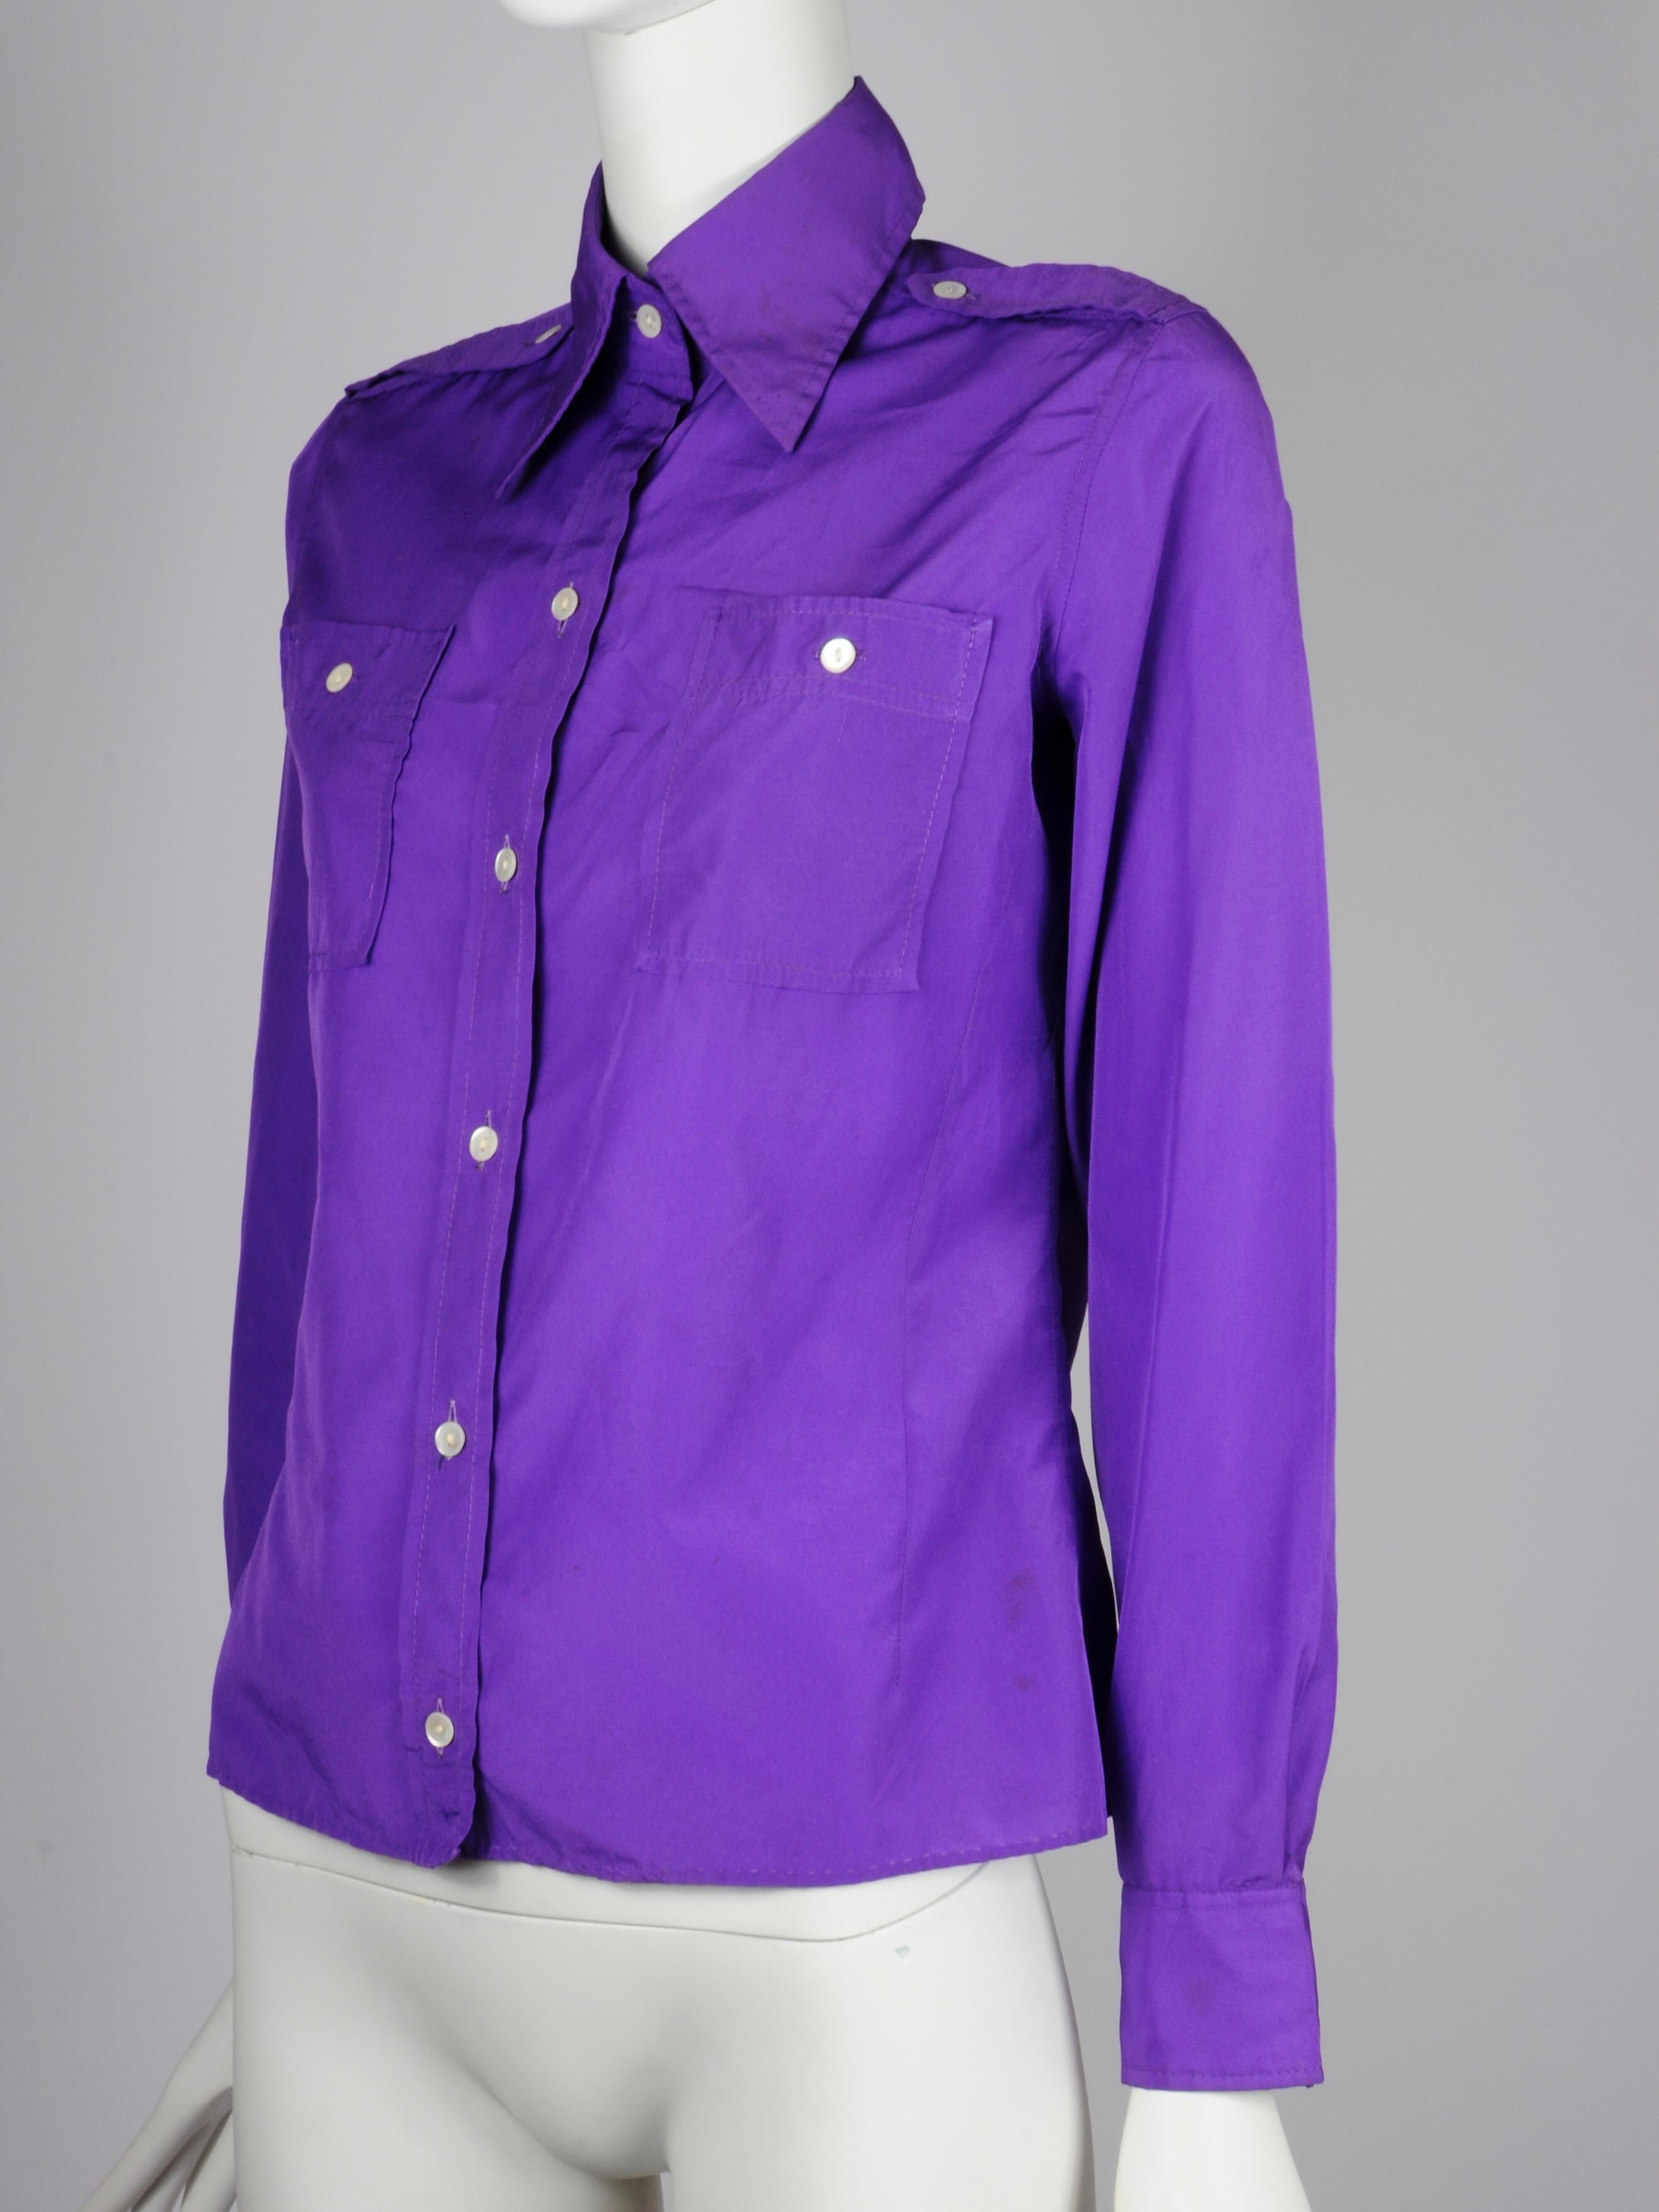 Ted Lapidus 1970er Jahre lila Bluse mit militärischen / Uniform Stil Schulter Details und Taschen. Die Bluse hat einen typischen 1970er-Jahre-Kragen und einen schönen hellen Lila-Farbton. 

MARKENBESCHREIBUNG
Ted Lapidus gründete sein Modehaus 1951